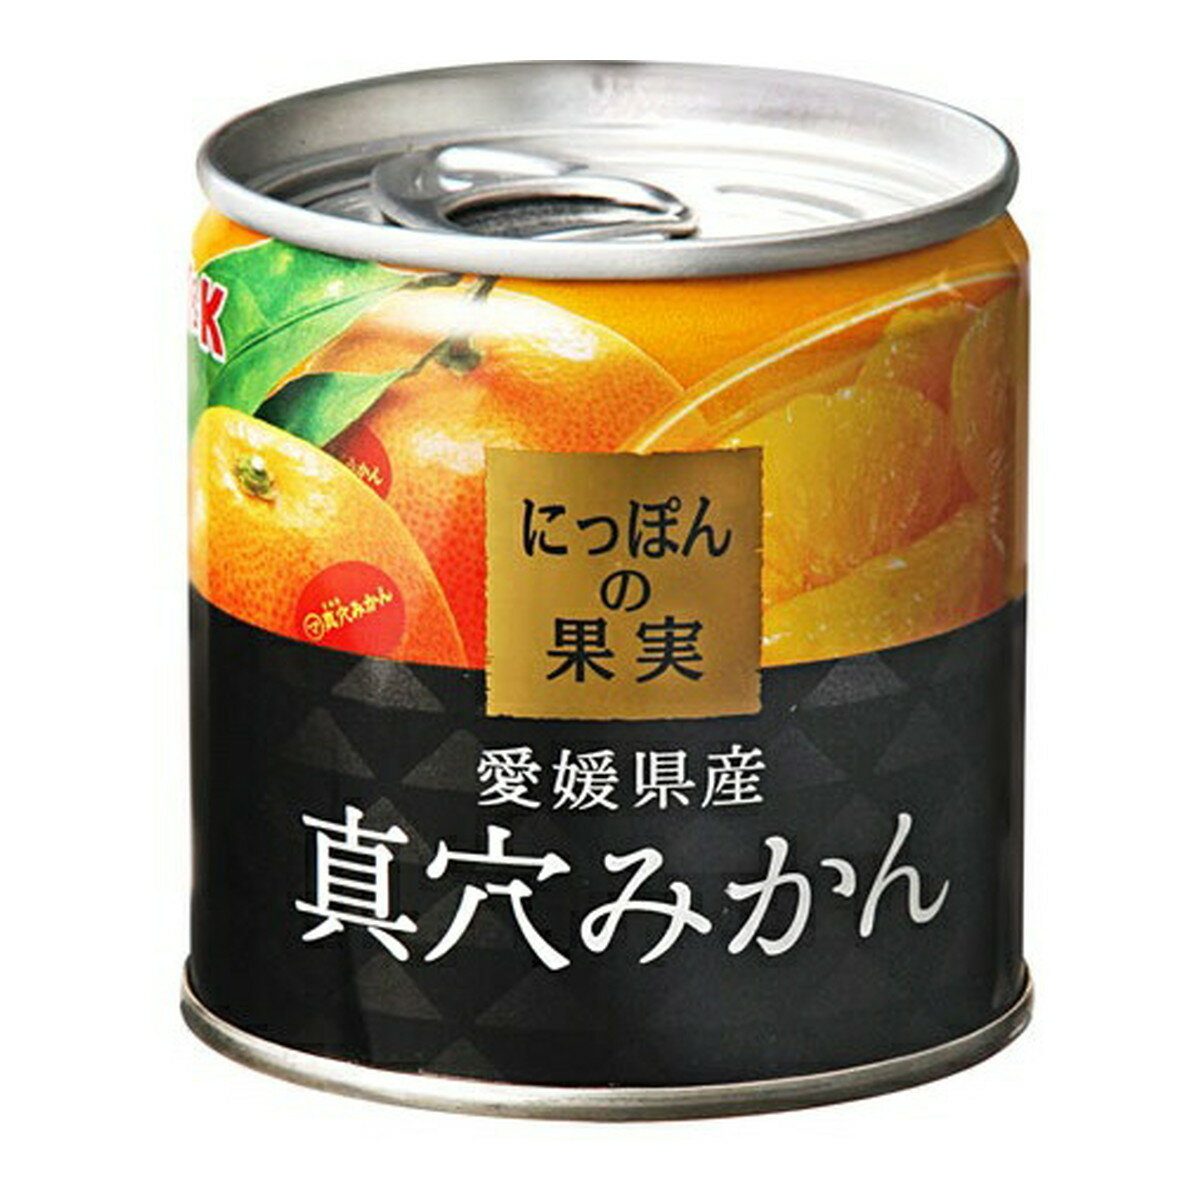 【送料込・まとめ買い×2個セット】KK にっぽんの果実 愛媛県産 真穴みかん 缶詰